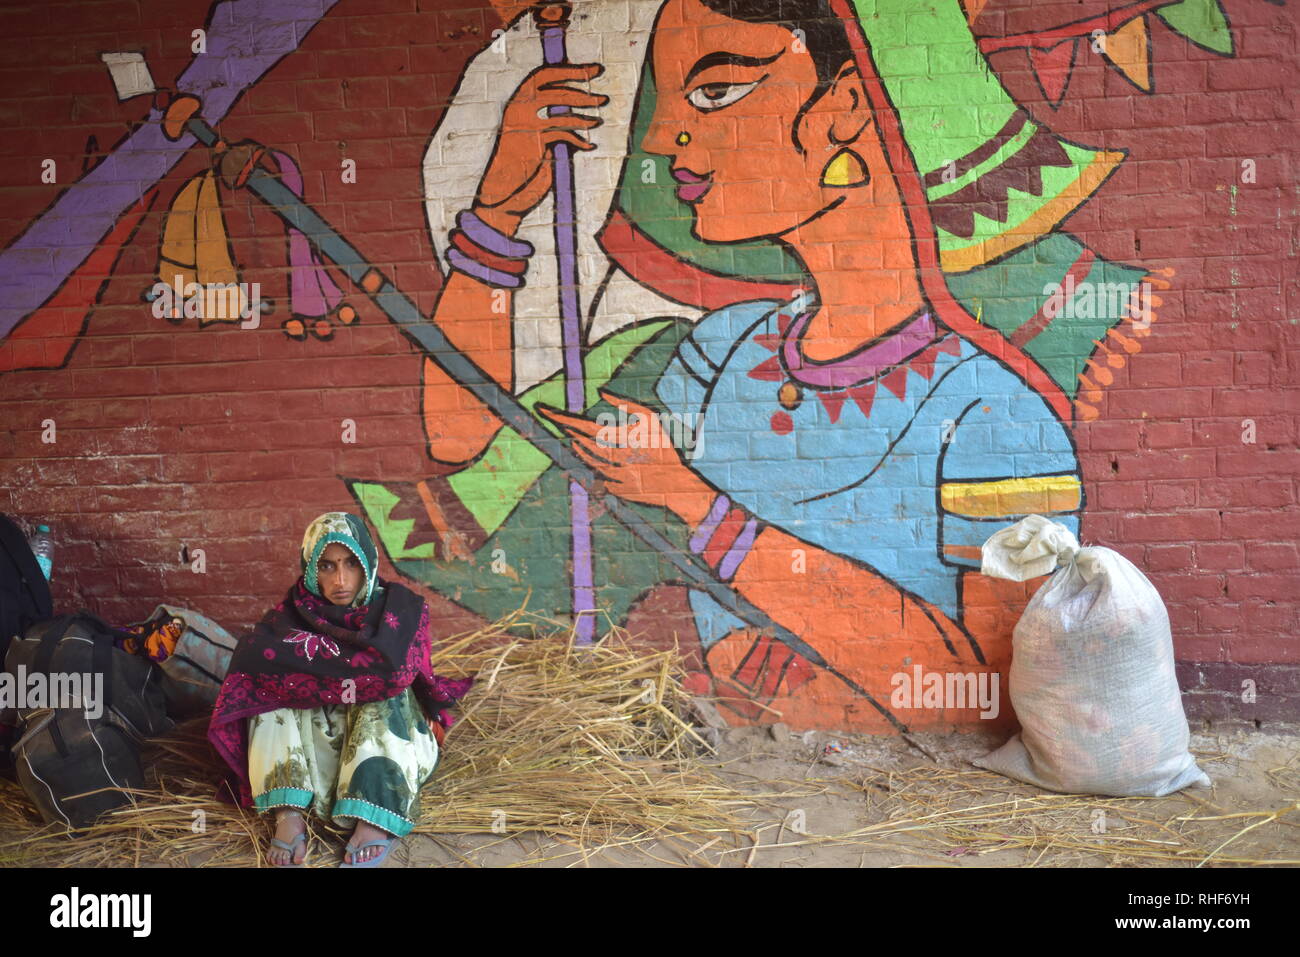 Pilger gesehen Sitzbereich unter einem Gemälde während der Wallfahrt. Kumbh Mela, einer der größten Gemeinde des Menschen auf der Erde. Lacs von Menschen werden erwartet am Tag der zweiten Shahi Snan am 4. Februar und Arrangements sind entsprechend in Prayagraj gemacht. Stockfoto